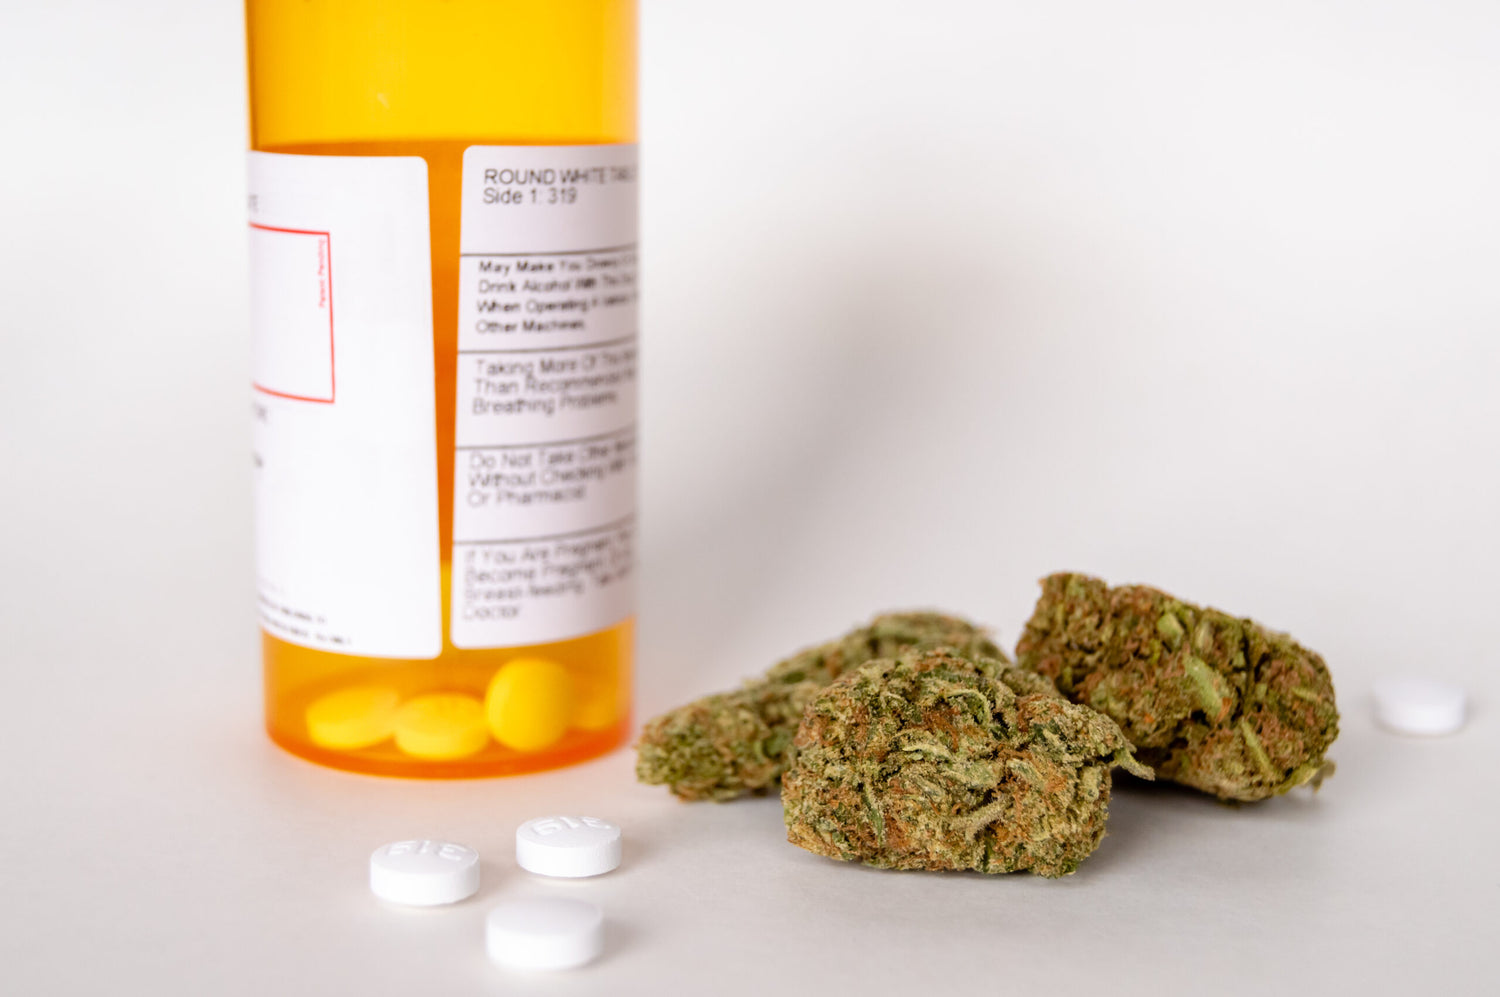 A New Study Shows Medical Marijuana Reduces Opioid Prescriptions